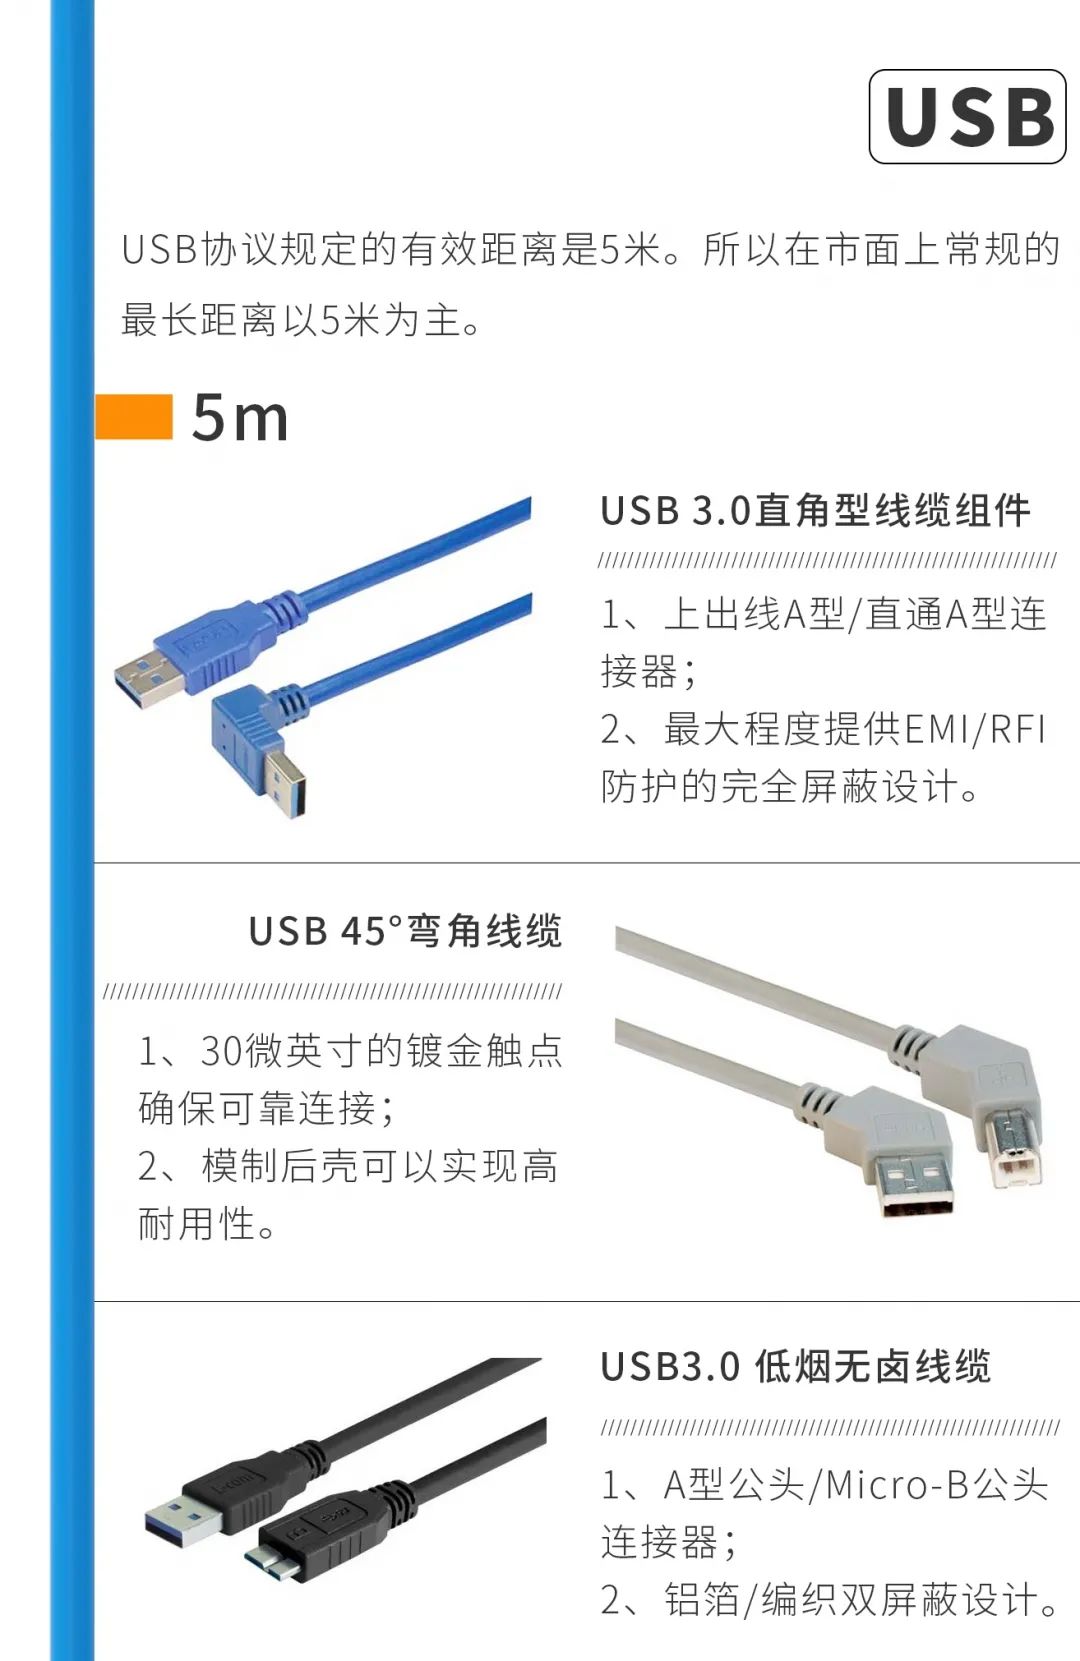 原来这样可以让USB延长50米！